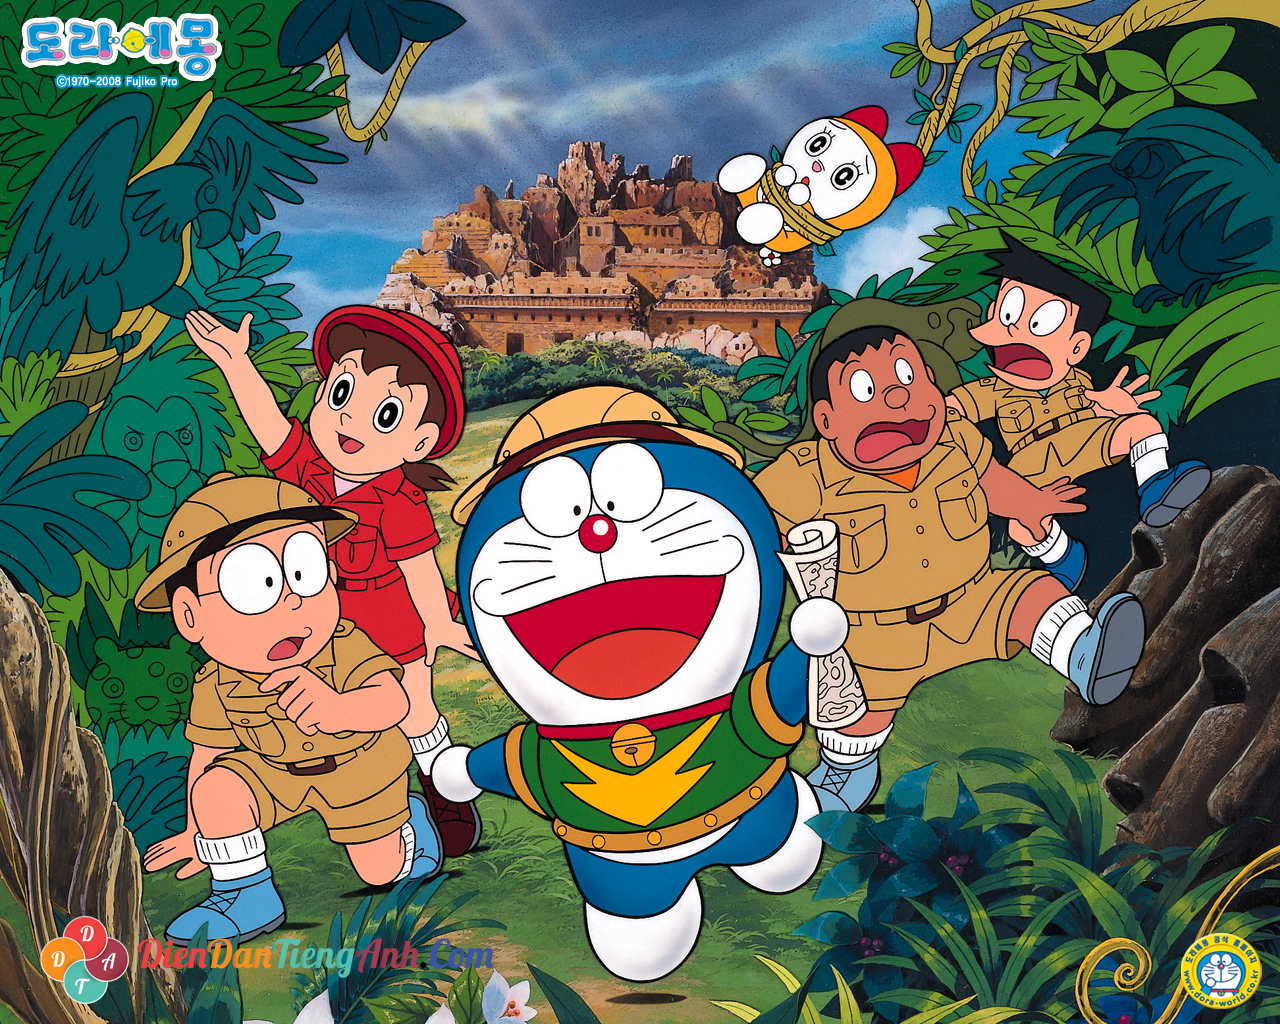 Doraemon tập 5 sẽ là món ăn tinh thần ngon miệng cho các fan của loạt phim hoạt hình này. Với cốt truyện hấp dẫn và những chiêu thức thần kỳ của Doraemon và Nobita, bạn sẽ có những giây phút thư giãn tuyệt vời.